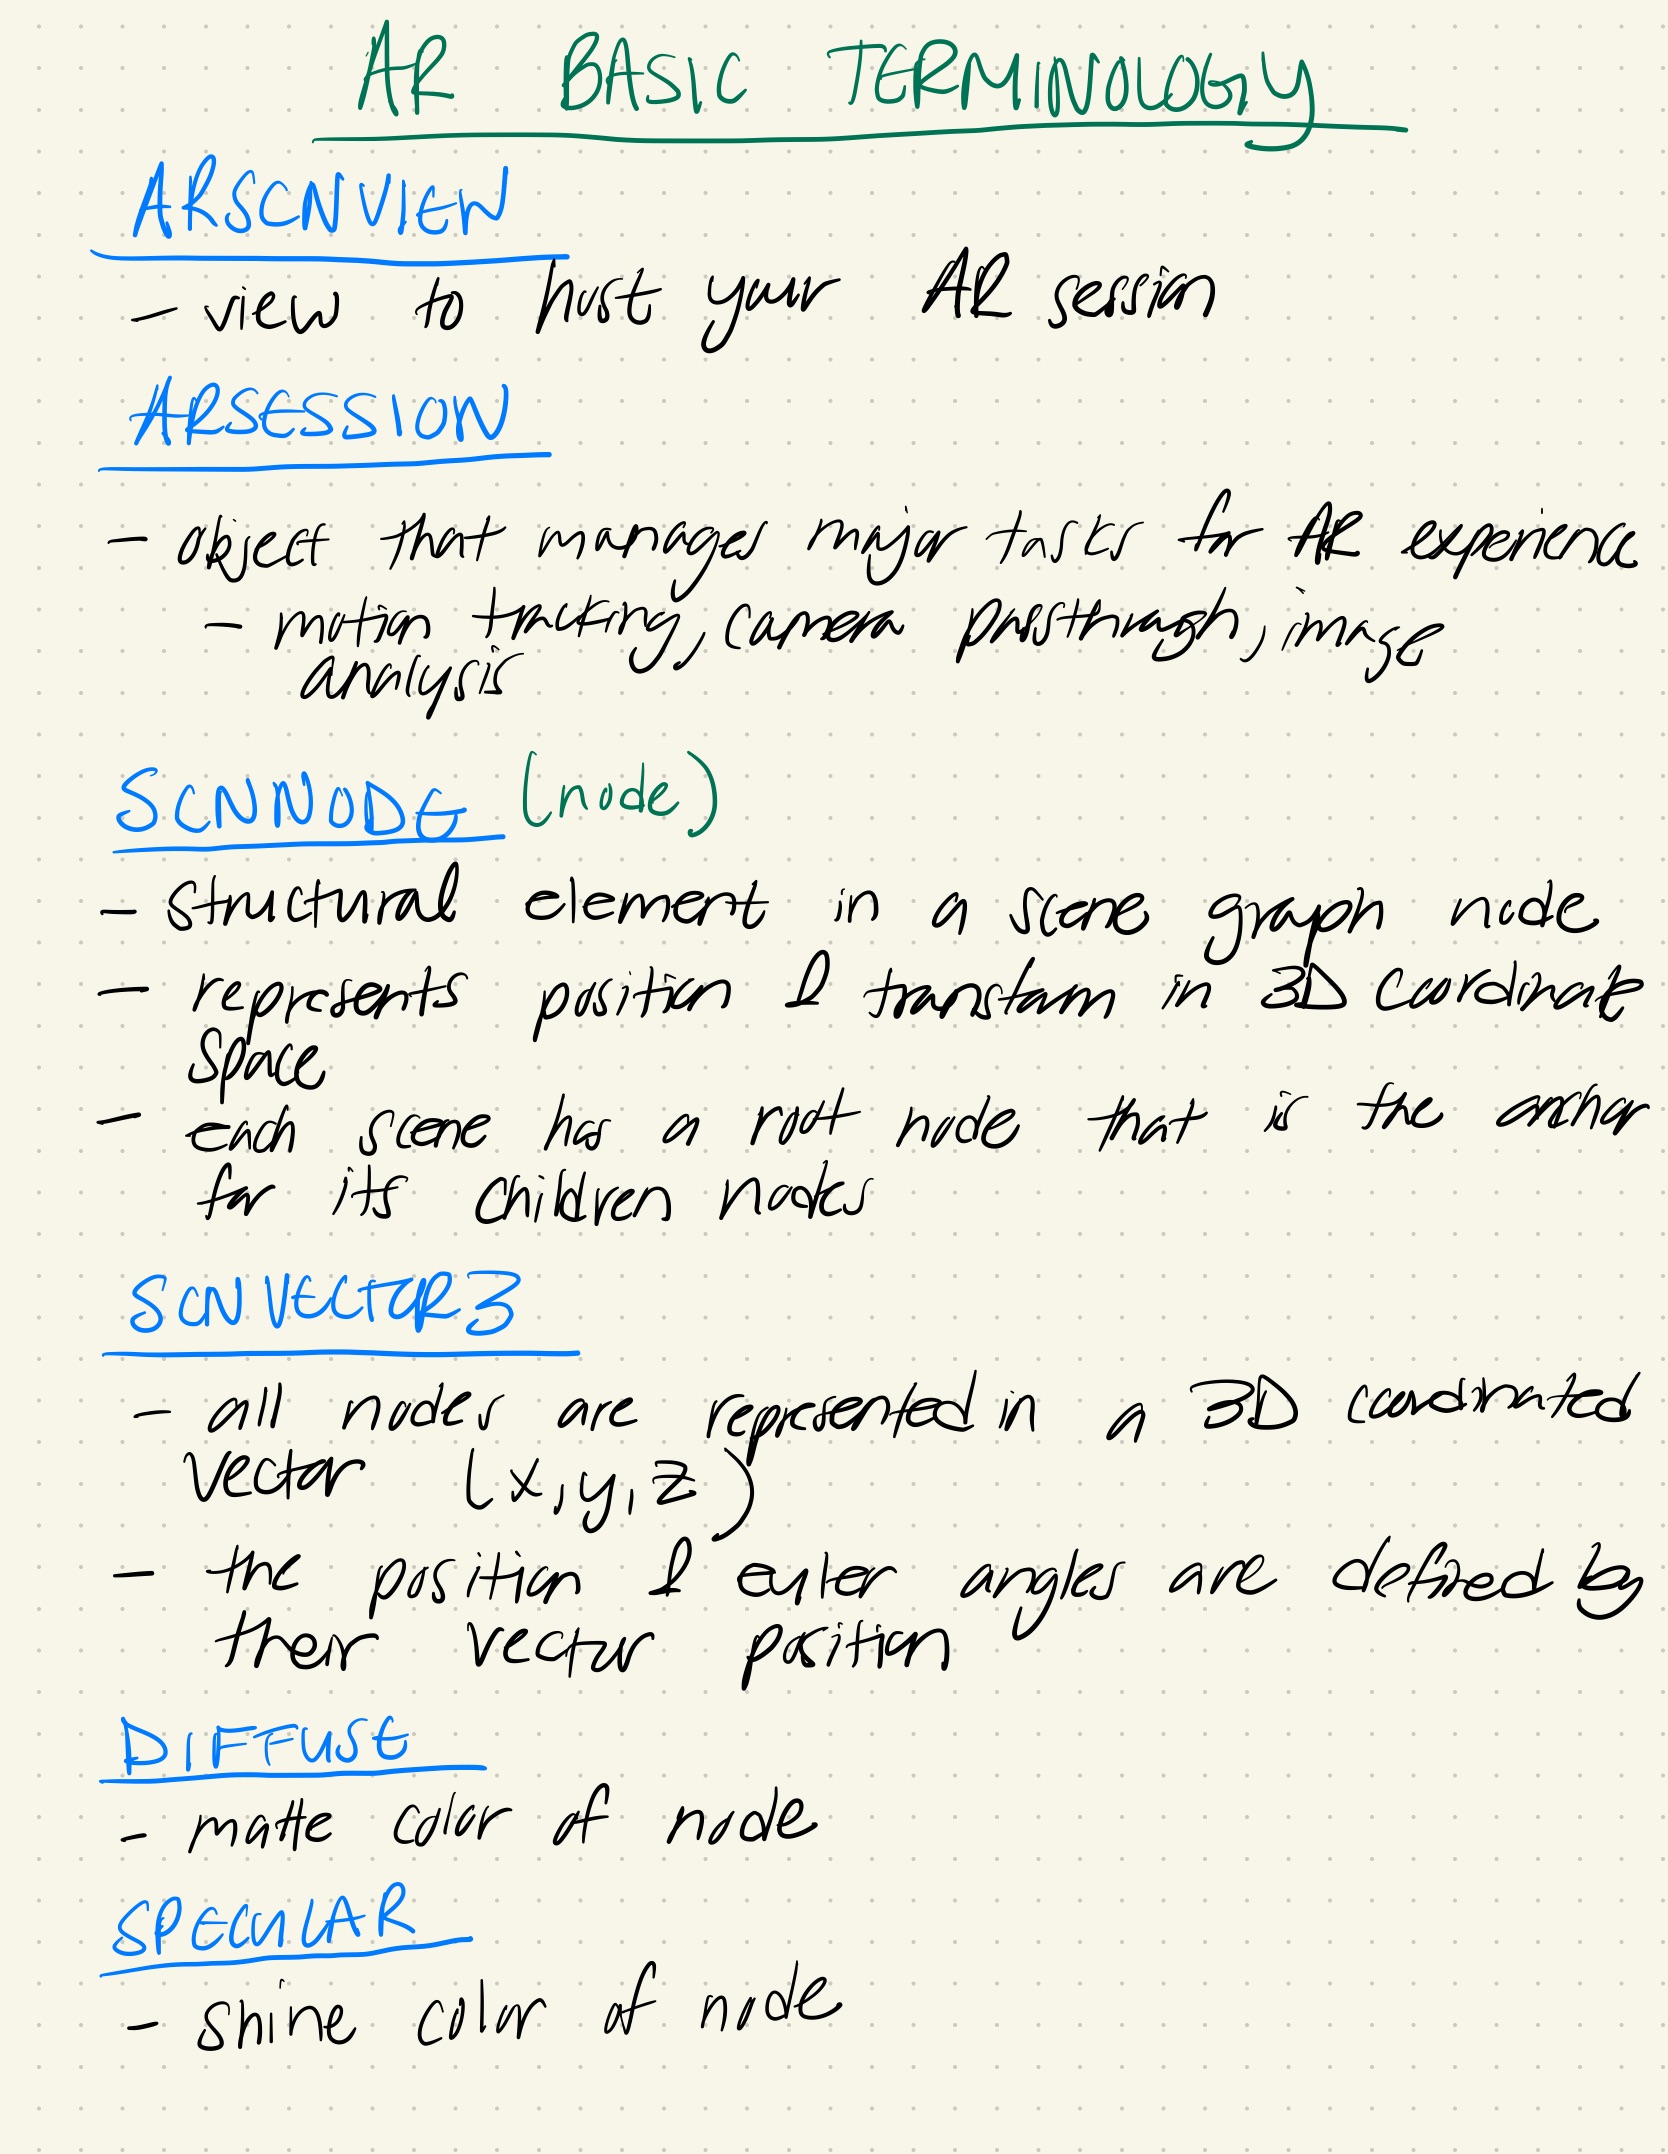 basic terminology for AR